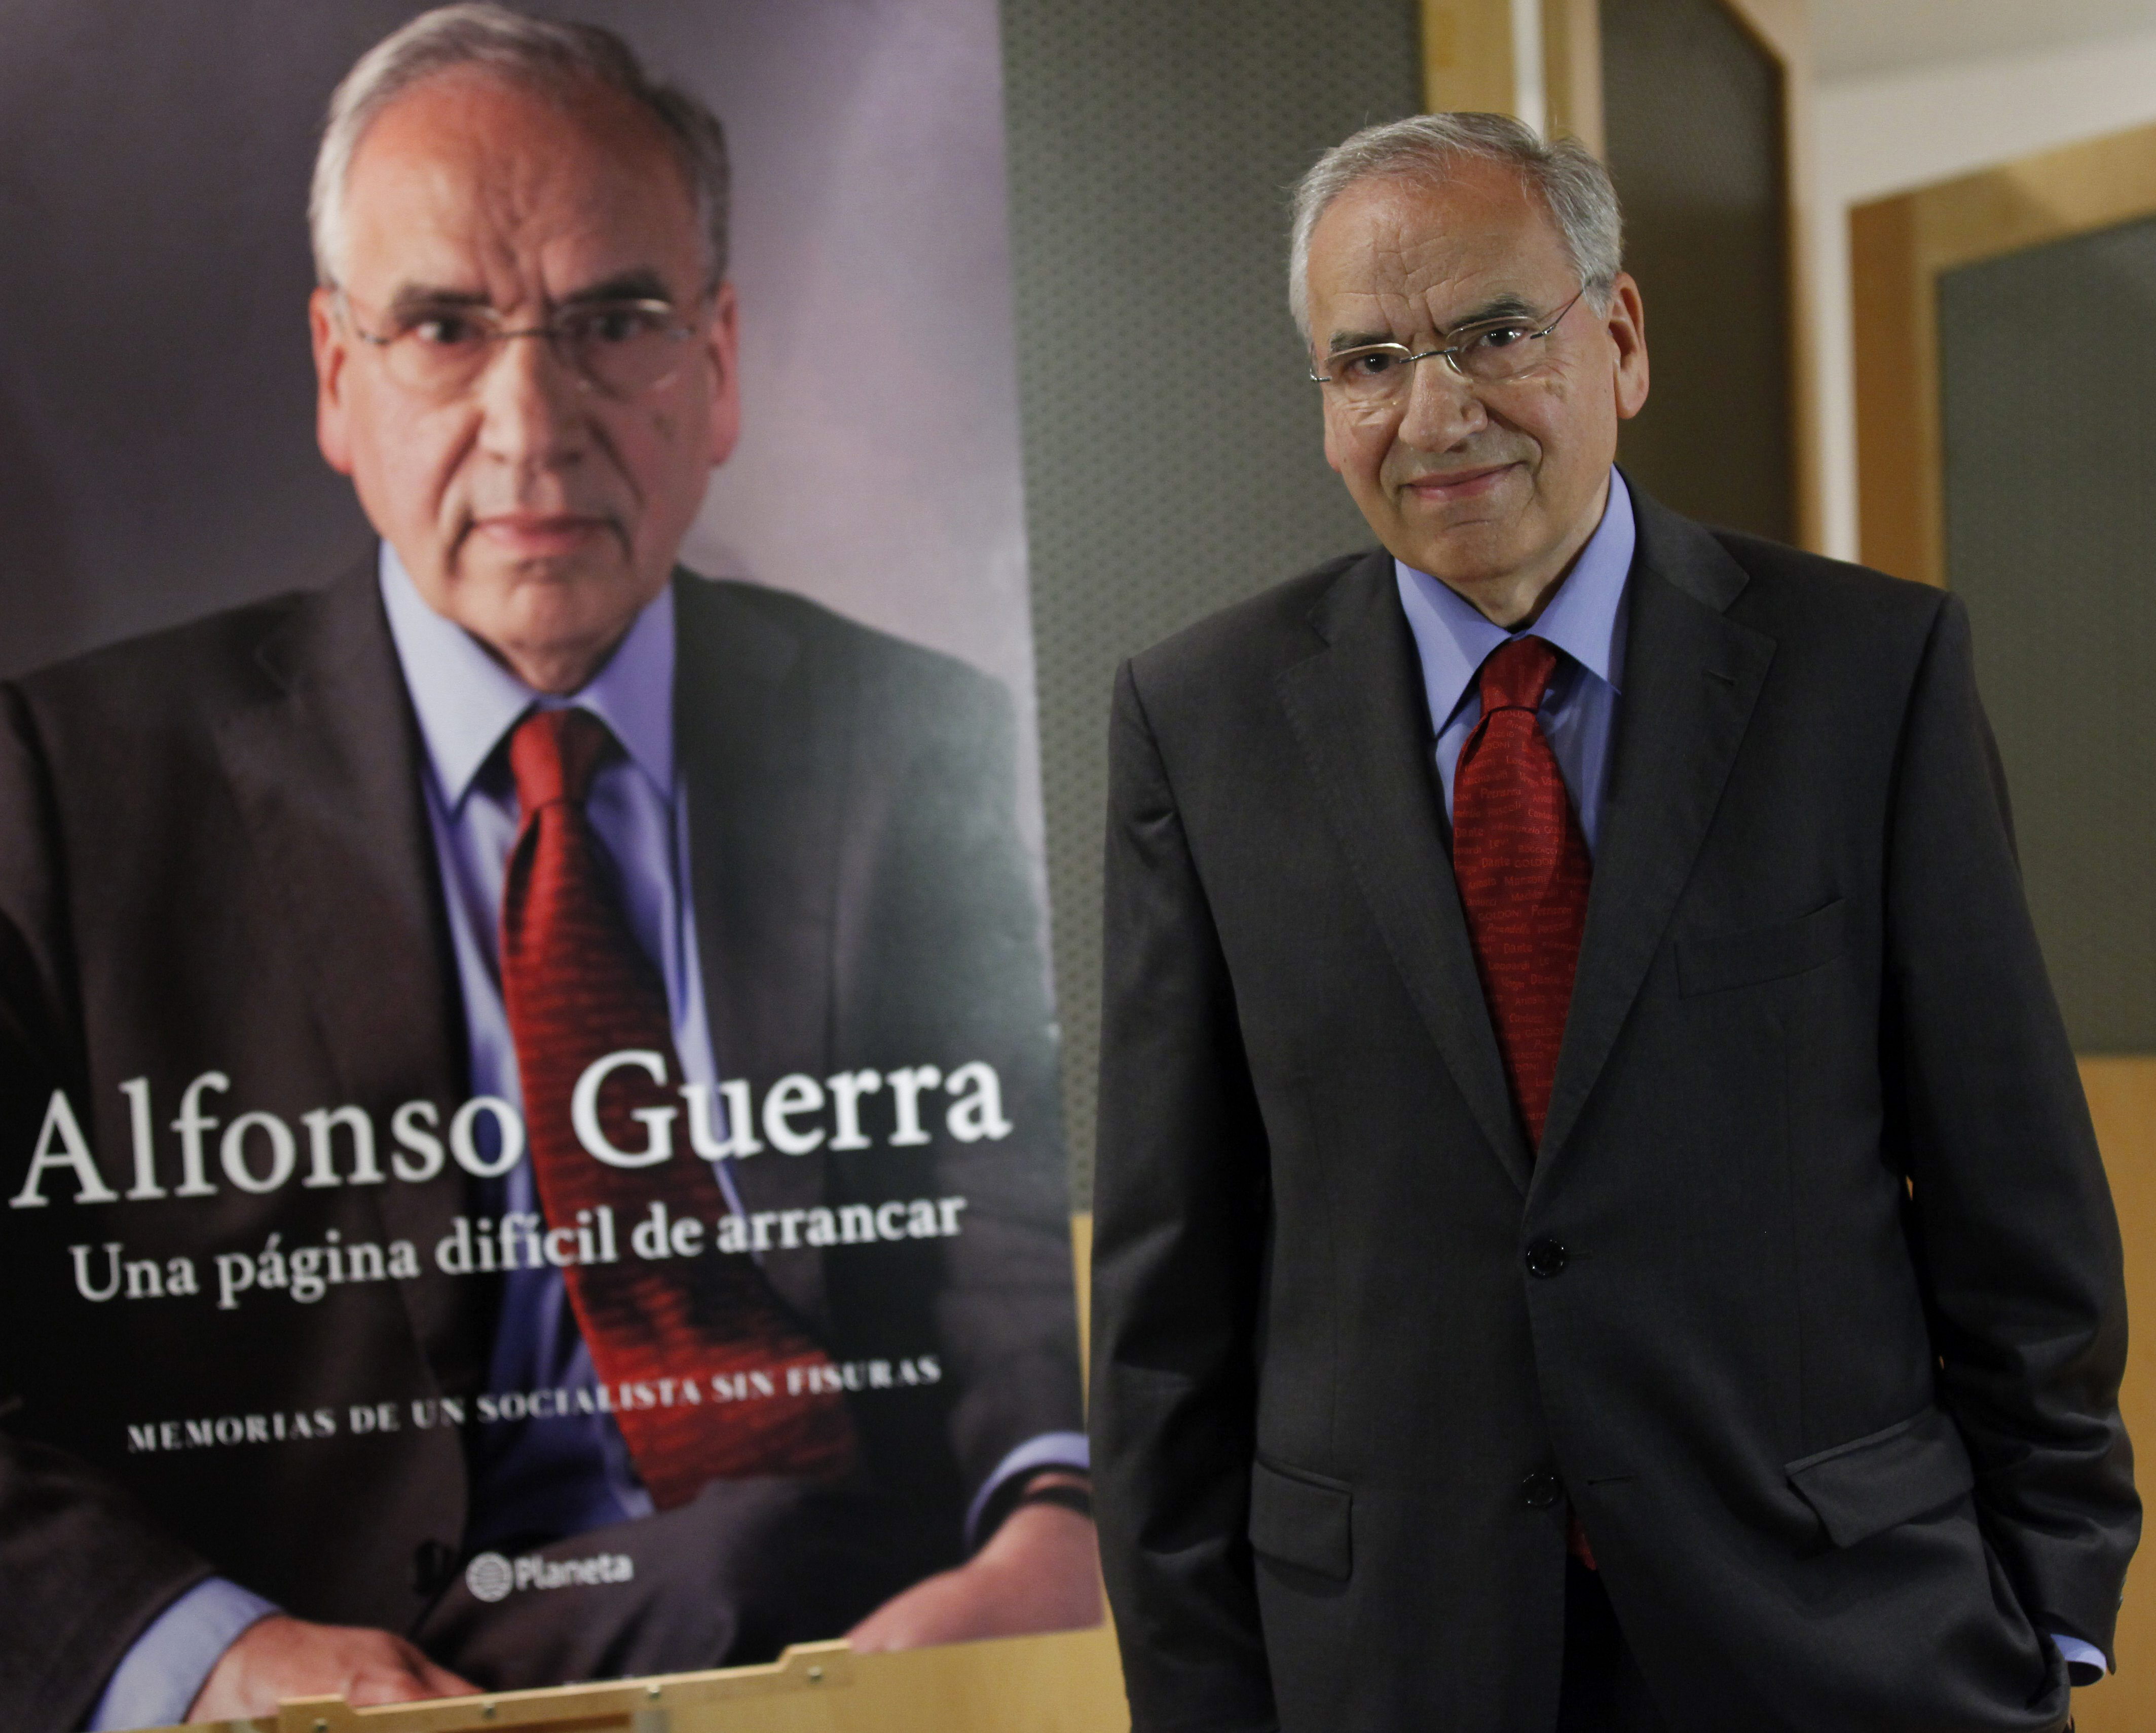 Alfonso Guerra, el diputado más antiguo de España, dejará su escaño en 2015